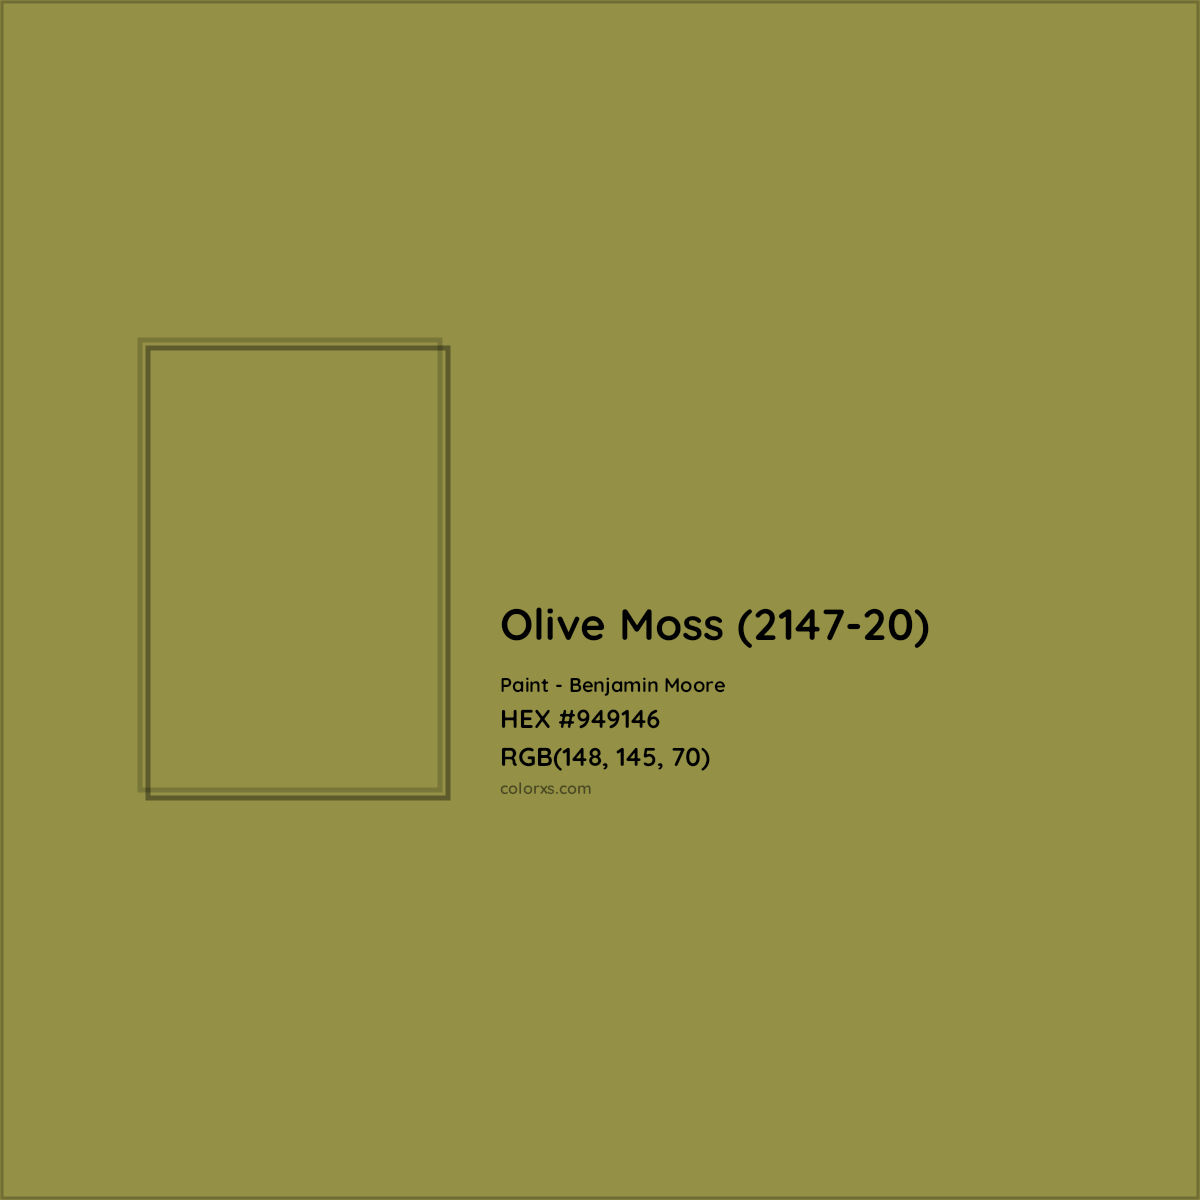 HEX #949146 Olive Moss (2147-20) Paint Benjamin Moore - Color Code